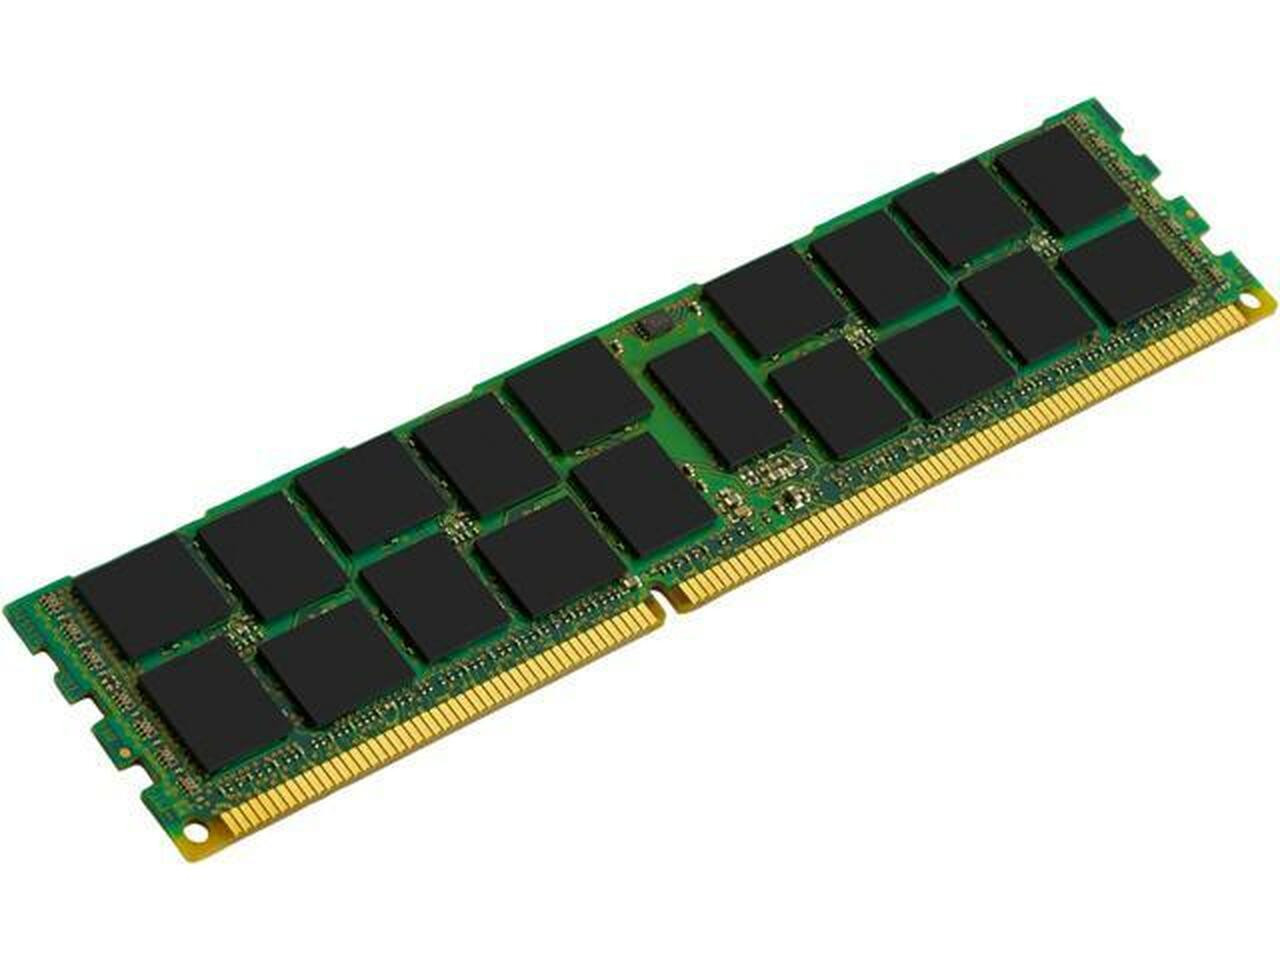 Netpatibles 8GB DDR3 SDRAM Memory Module - MEMDR380LHL03ER18NPM